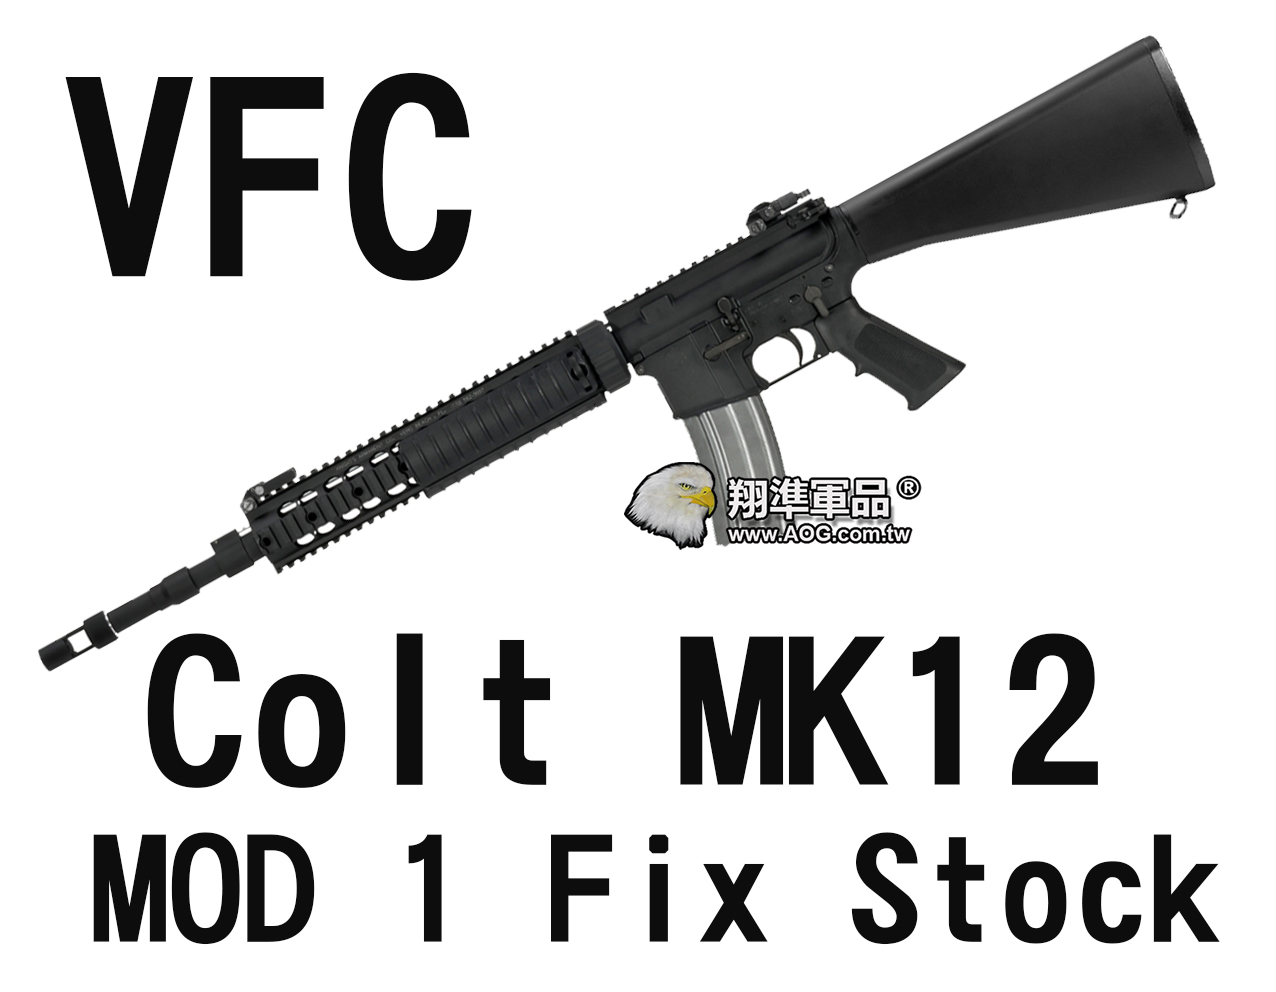 【翔準軍品AOG】【VFC】Colt MK12 MOD 1 Fix Stock(STD) 固定 魚骨版 電動槍 黑色 VF1-LMK12M1A-BK02 